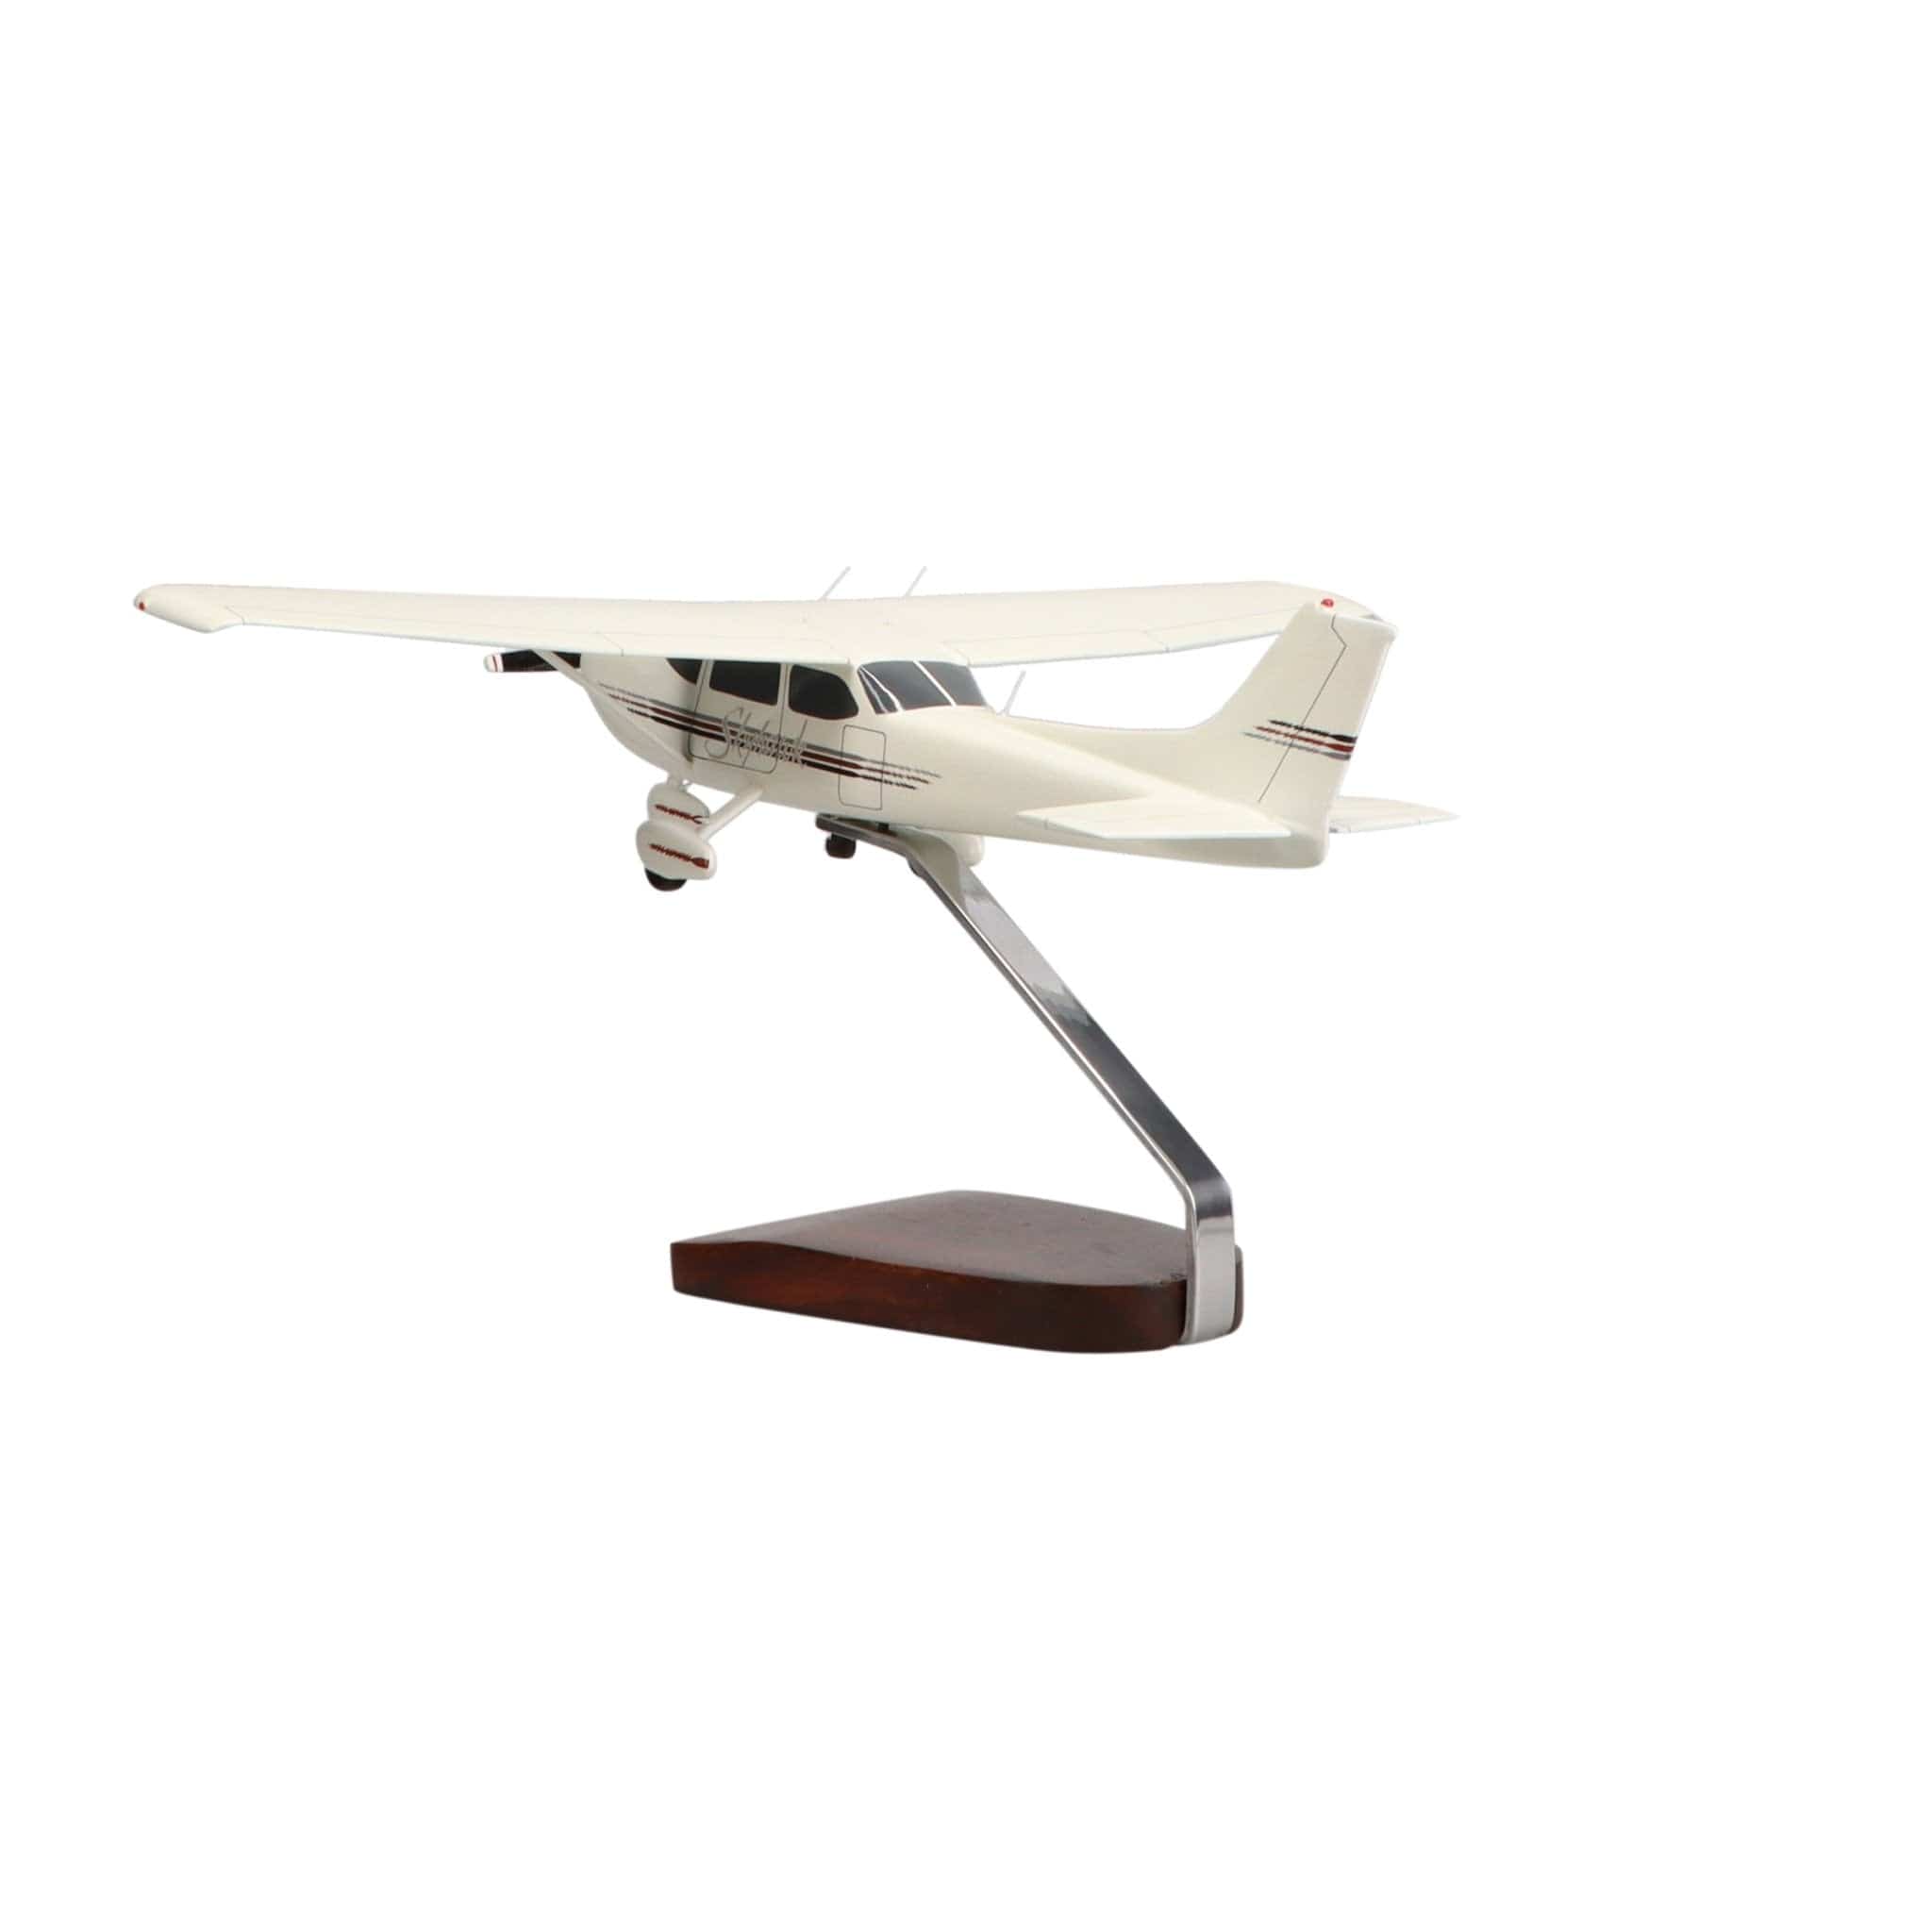 Cessna® 172 Skyhawk Large Mahogany Model